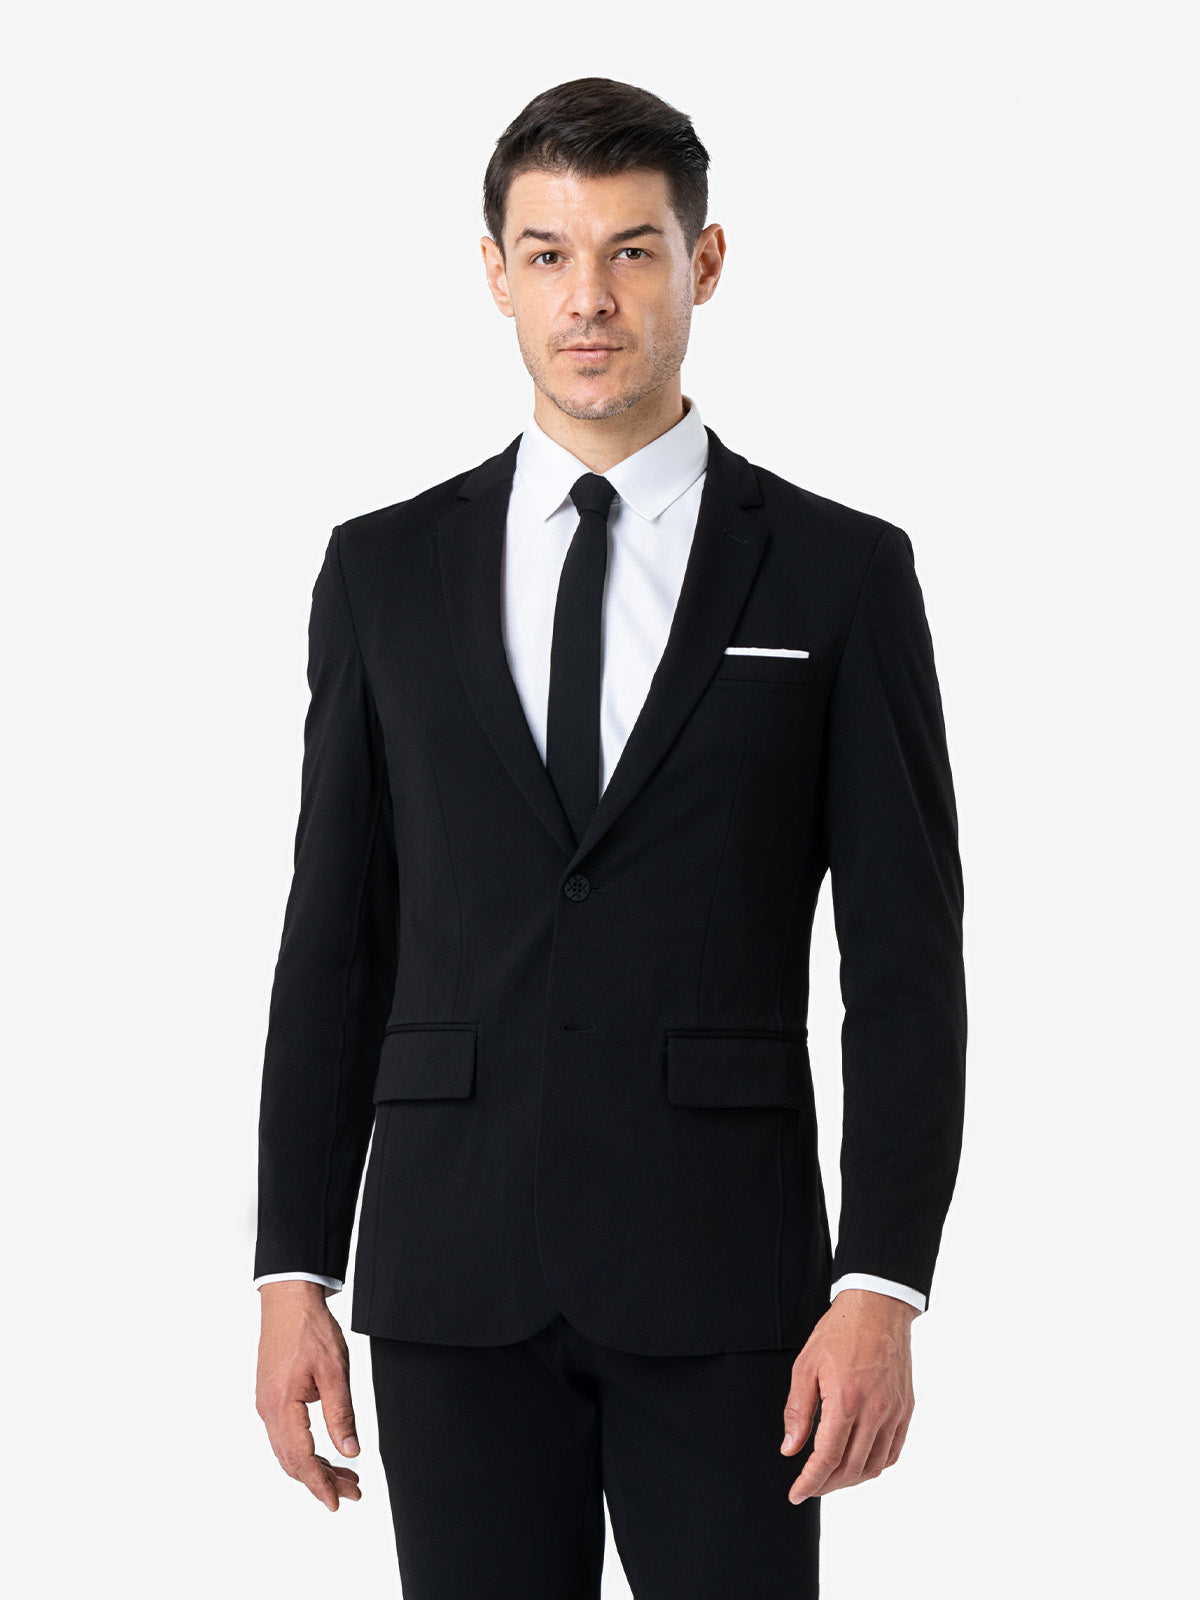 black suit black shirt